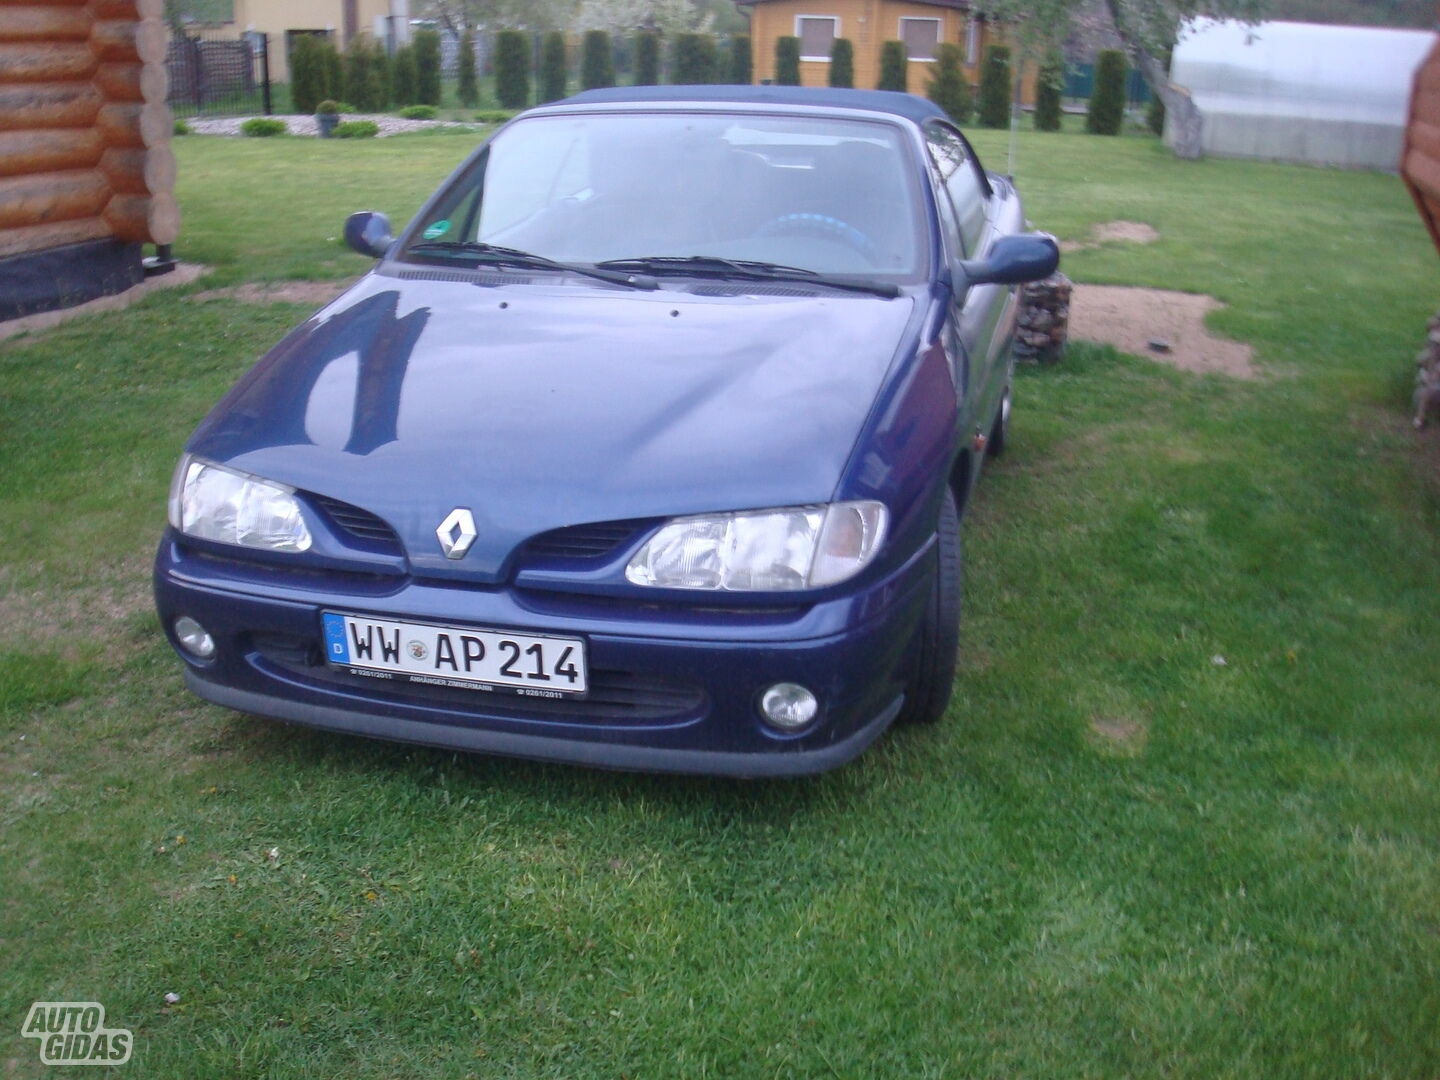 Renault Megane I 1998 г